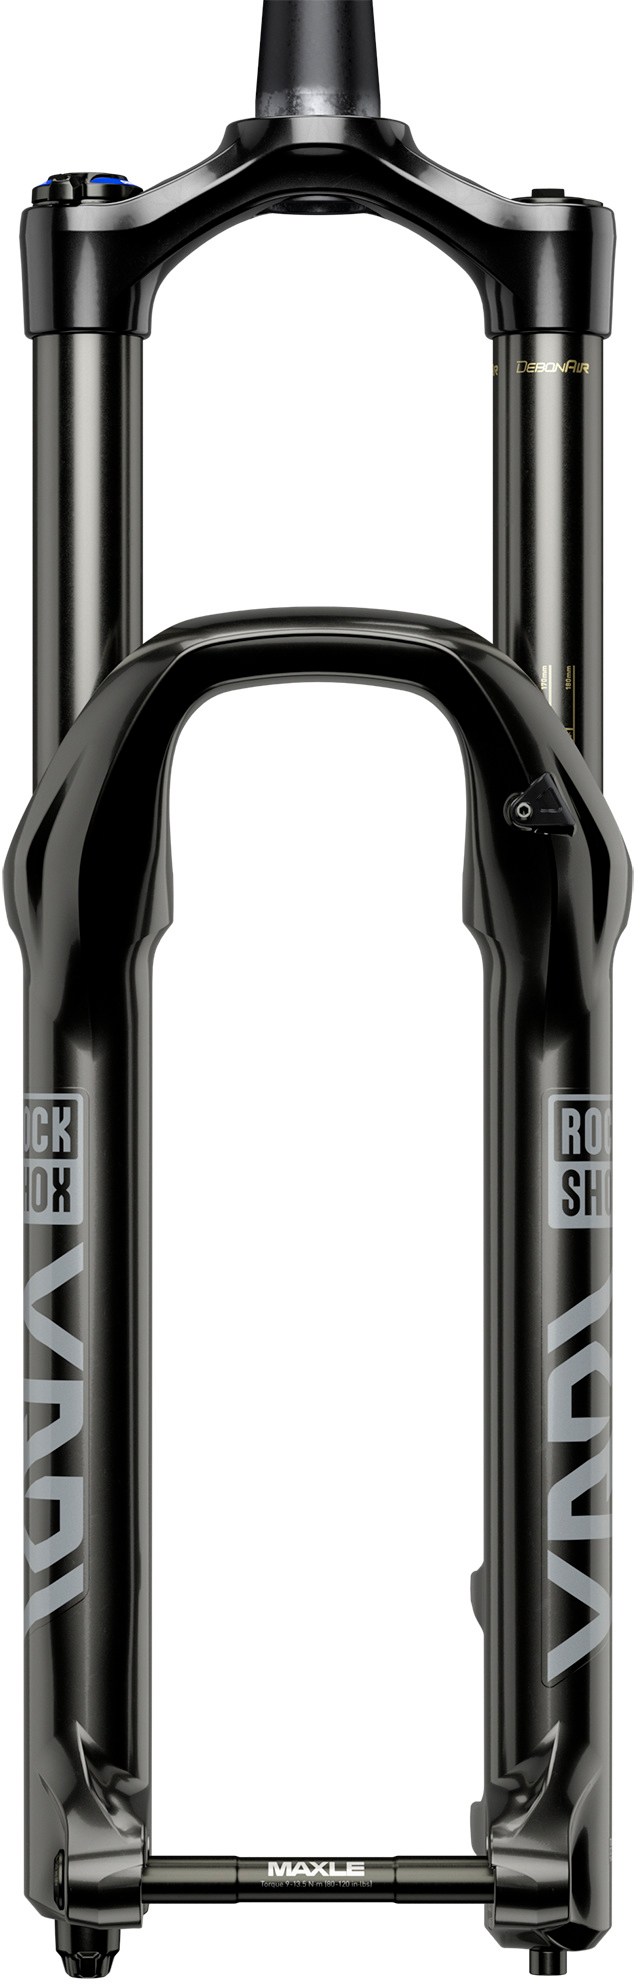 Амортизационная вилка Yari RC RockShox, черный rockshox rs 1 наклейки матовые для велосипеда на вилку mtb stickers